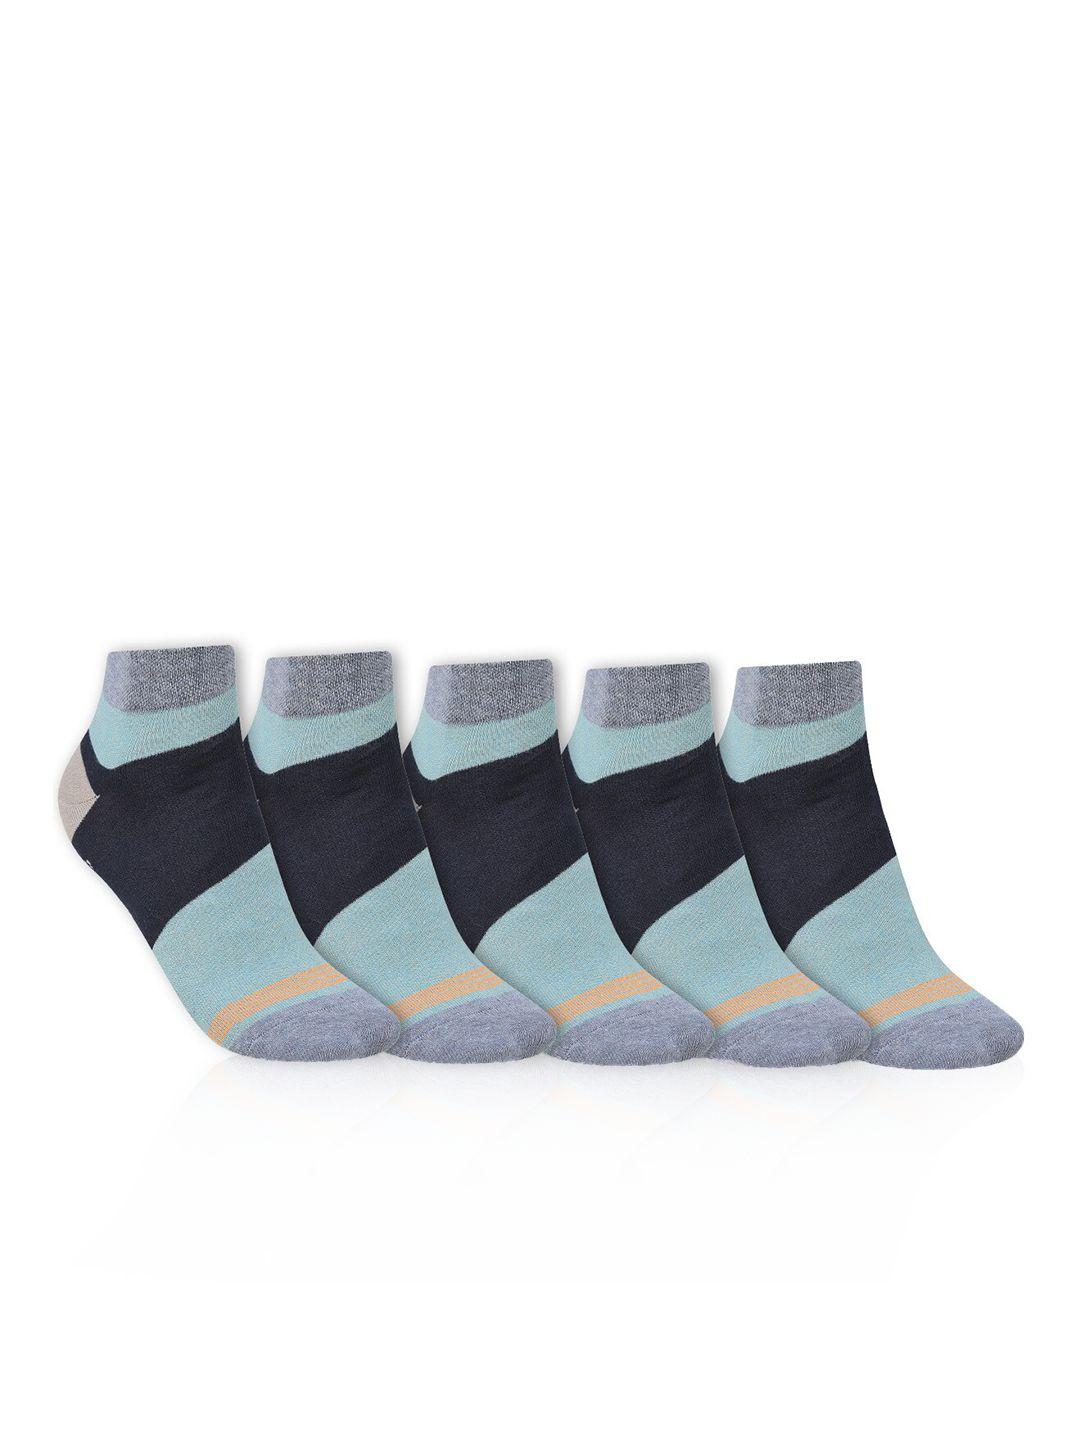 dollar socks men pack of 5 colourblocked cotton ankle length socks